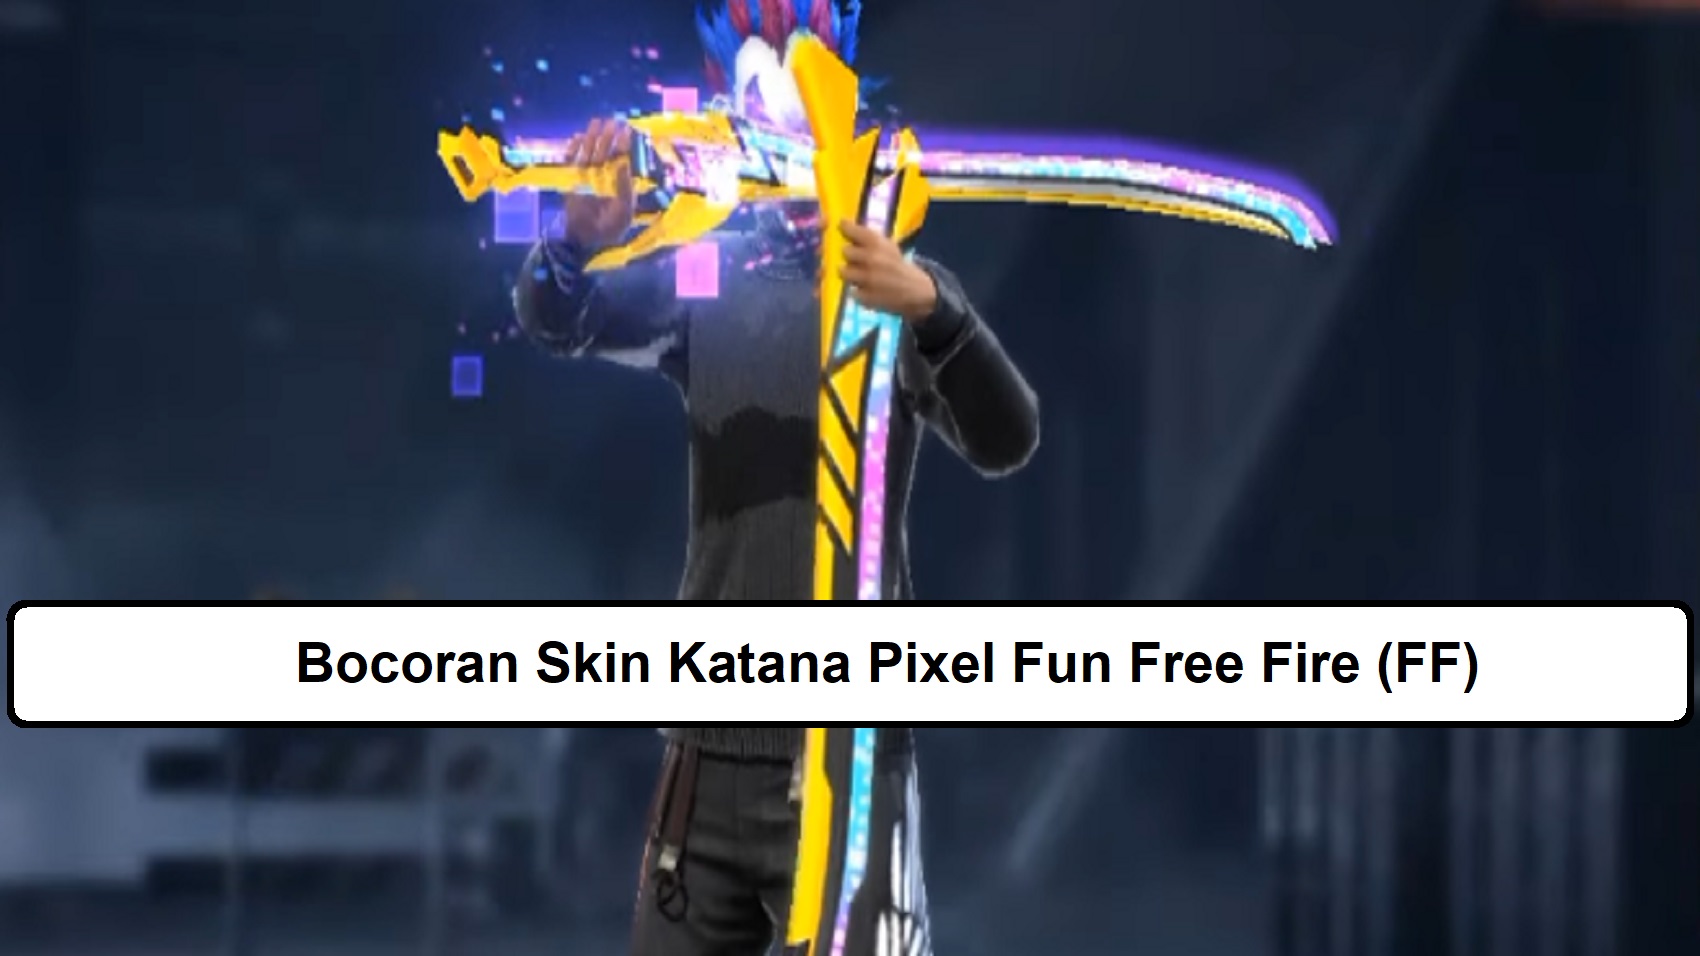 Bocoran Skin Katana Pixel Fun Free Fire (FF)